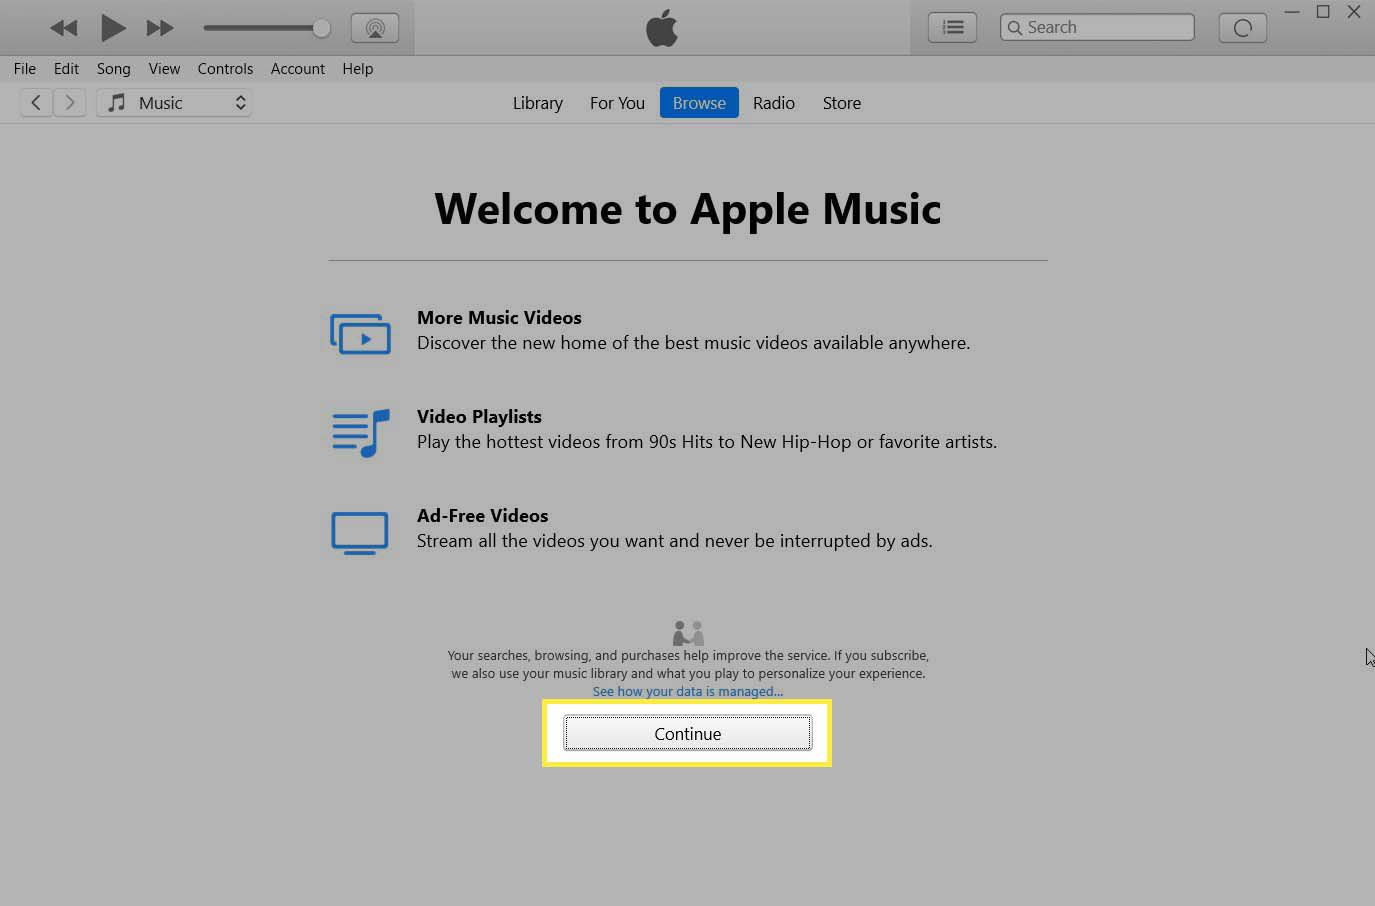 Fortsätt-knappen markerad på introduktionsskärmen Välkommen till Apple Music.